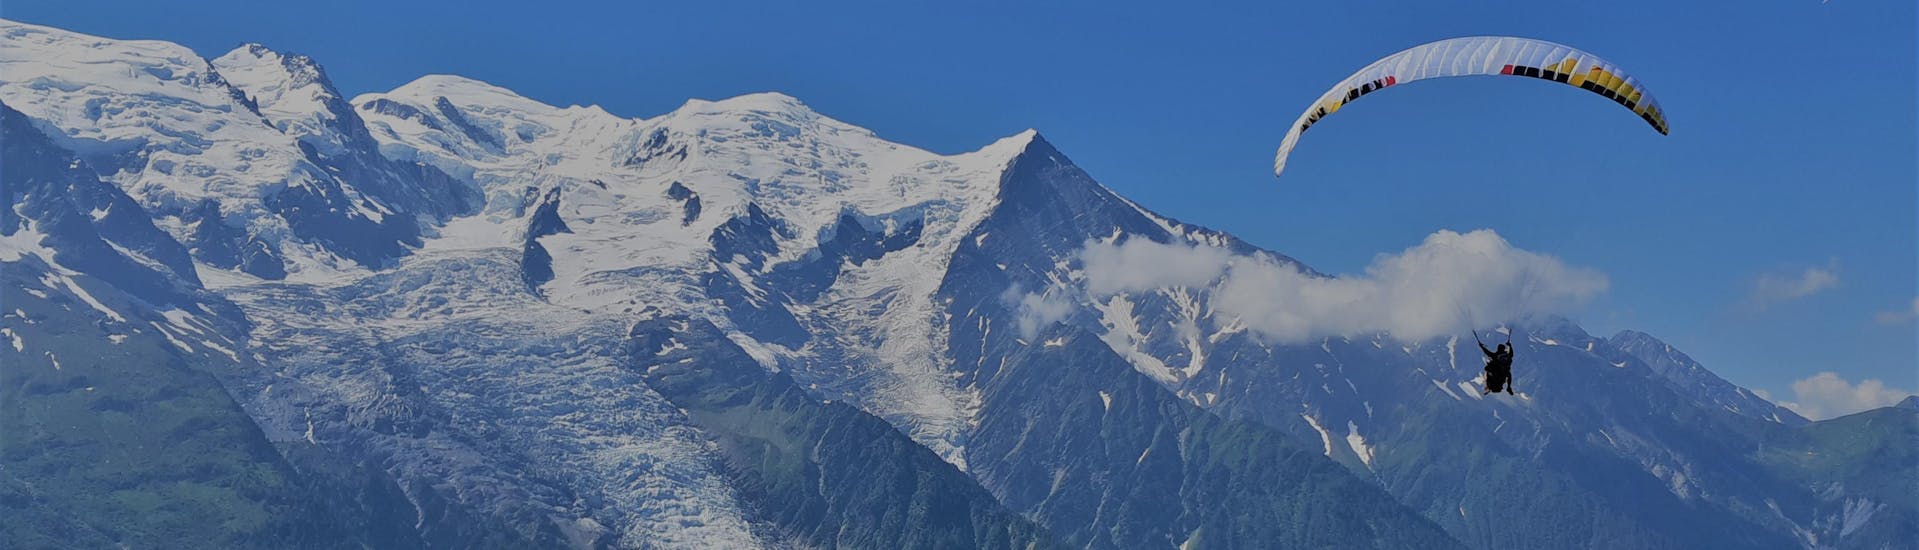 Volo termico in parapendio biposto a Chamonix (da 14 anni) - Aiguille du Midi.